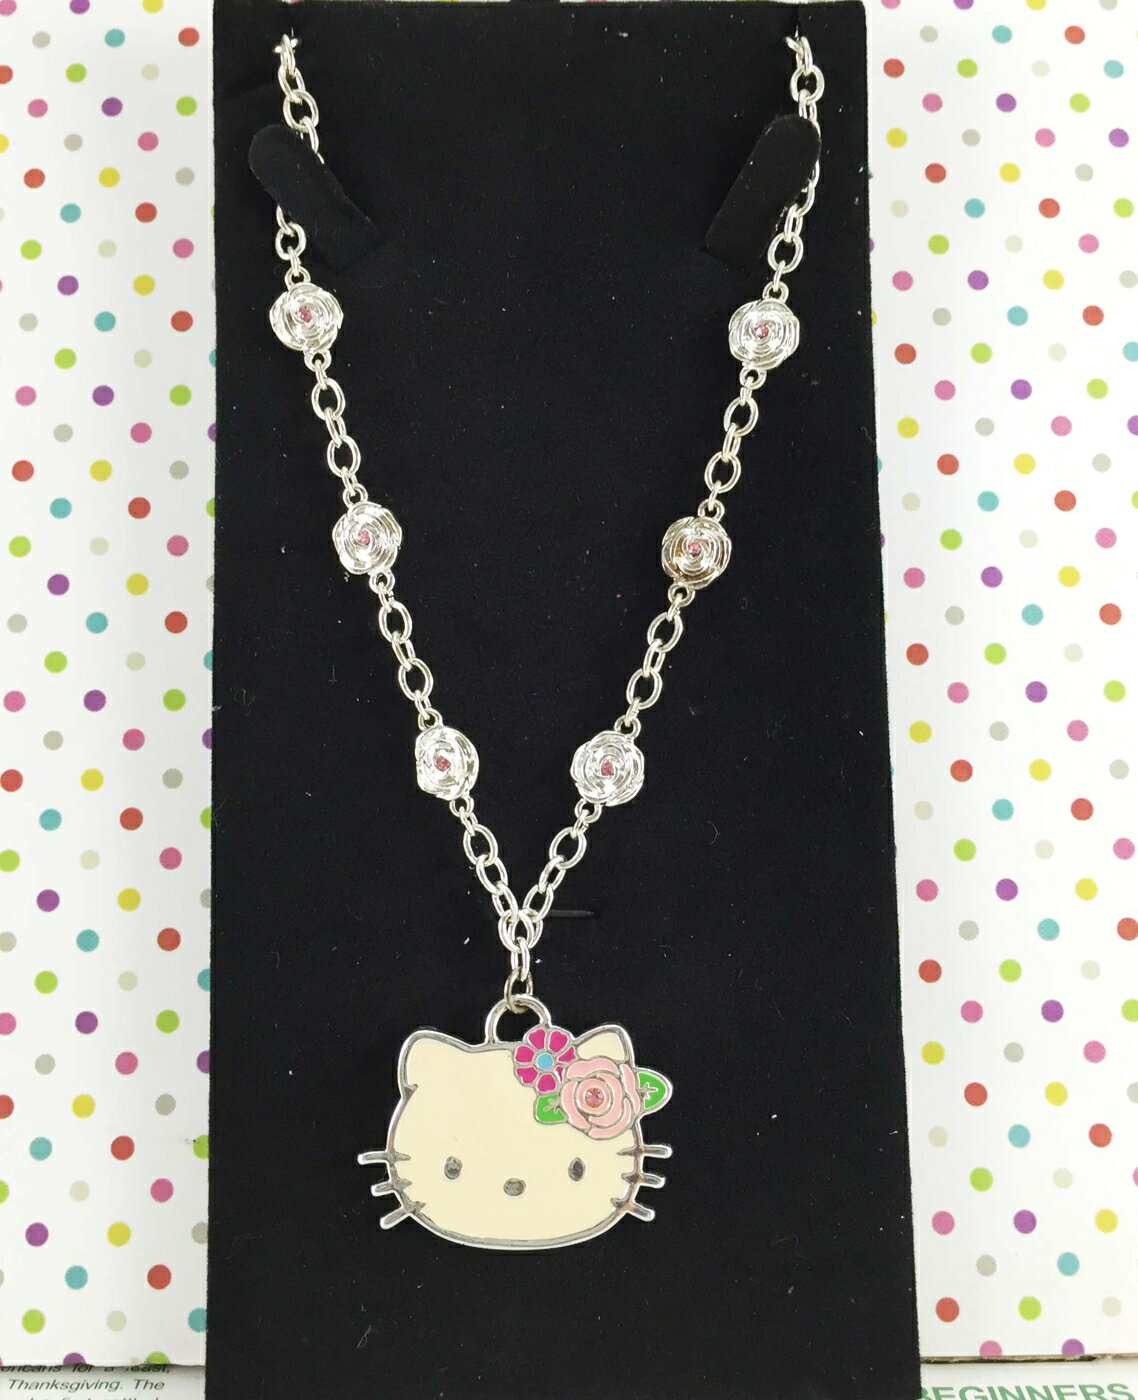 【震撼精品百貨】Hello Kitty 凱蒂貓 造型項鍊-玫瑰造型 震撼日式精品百貨